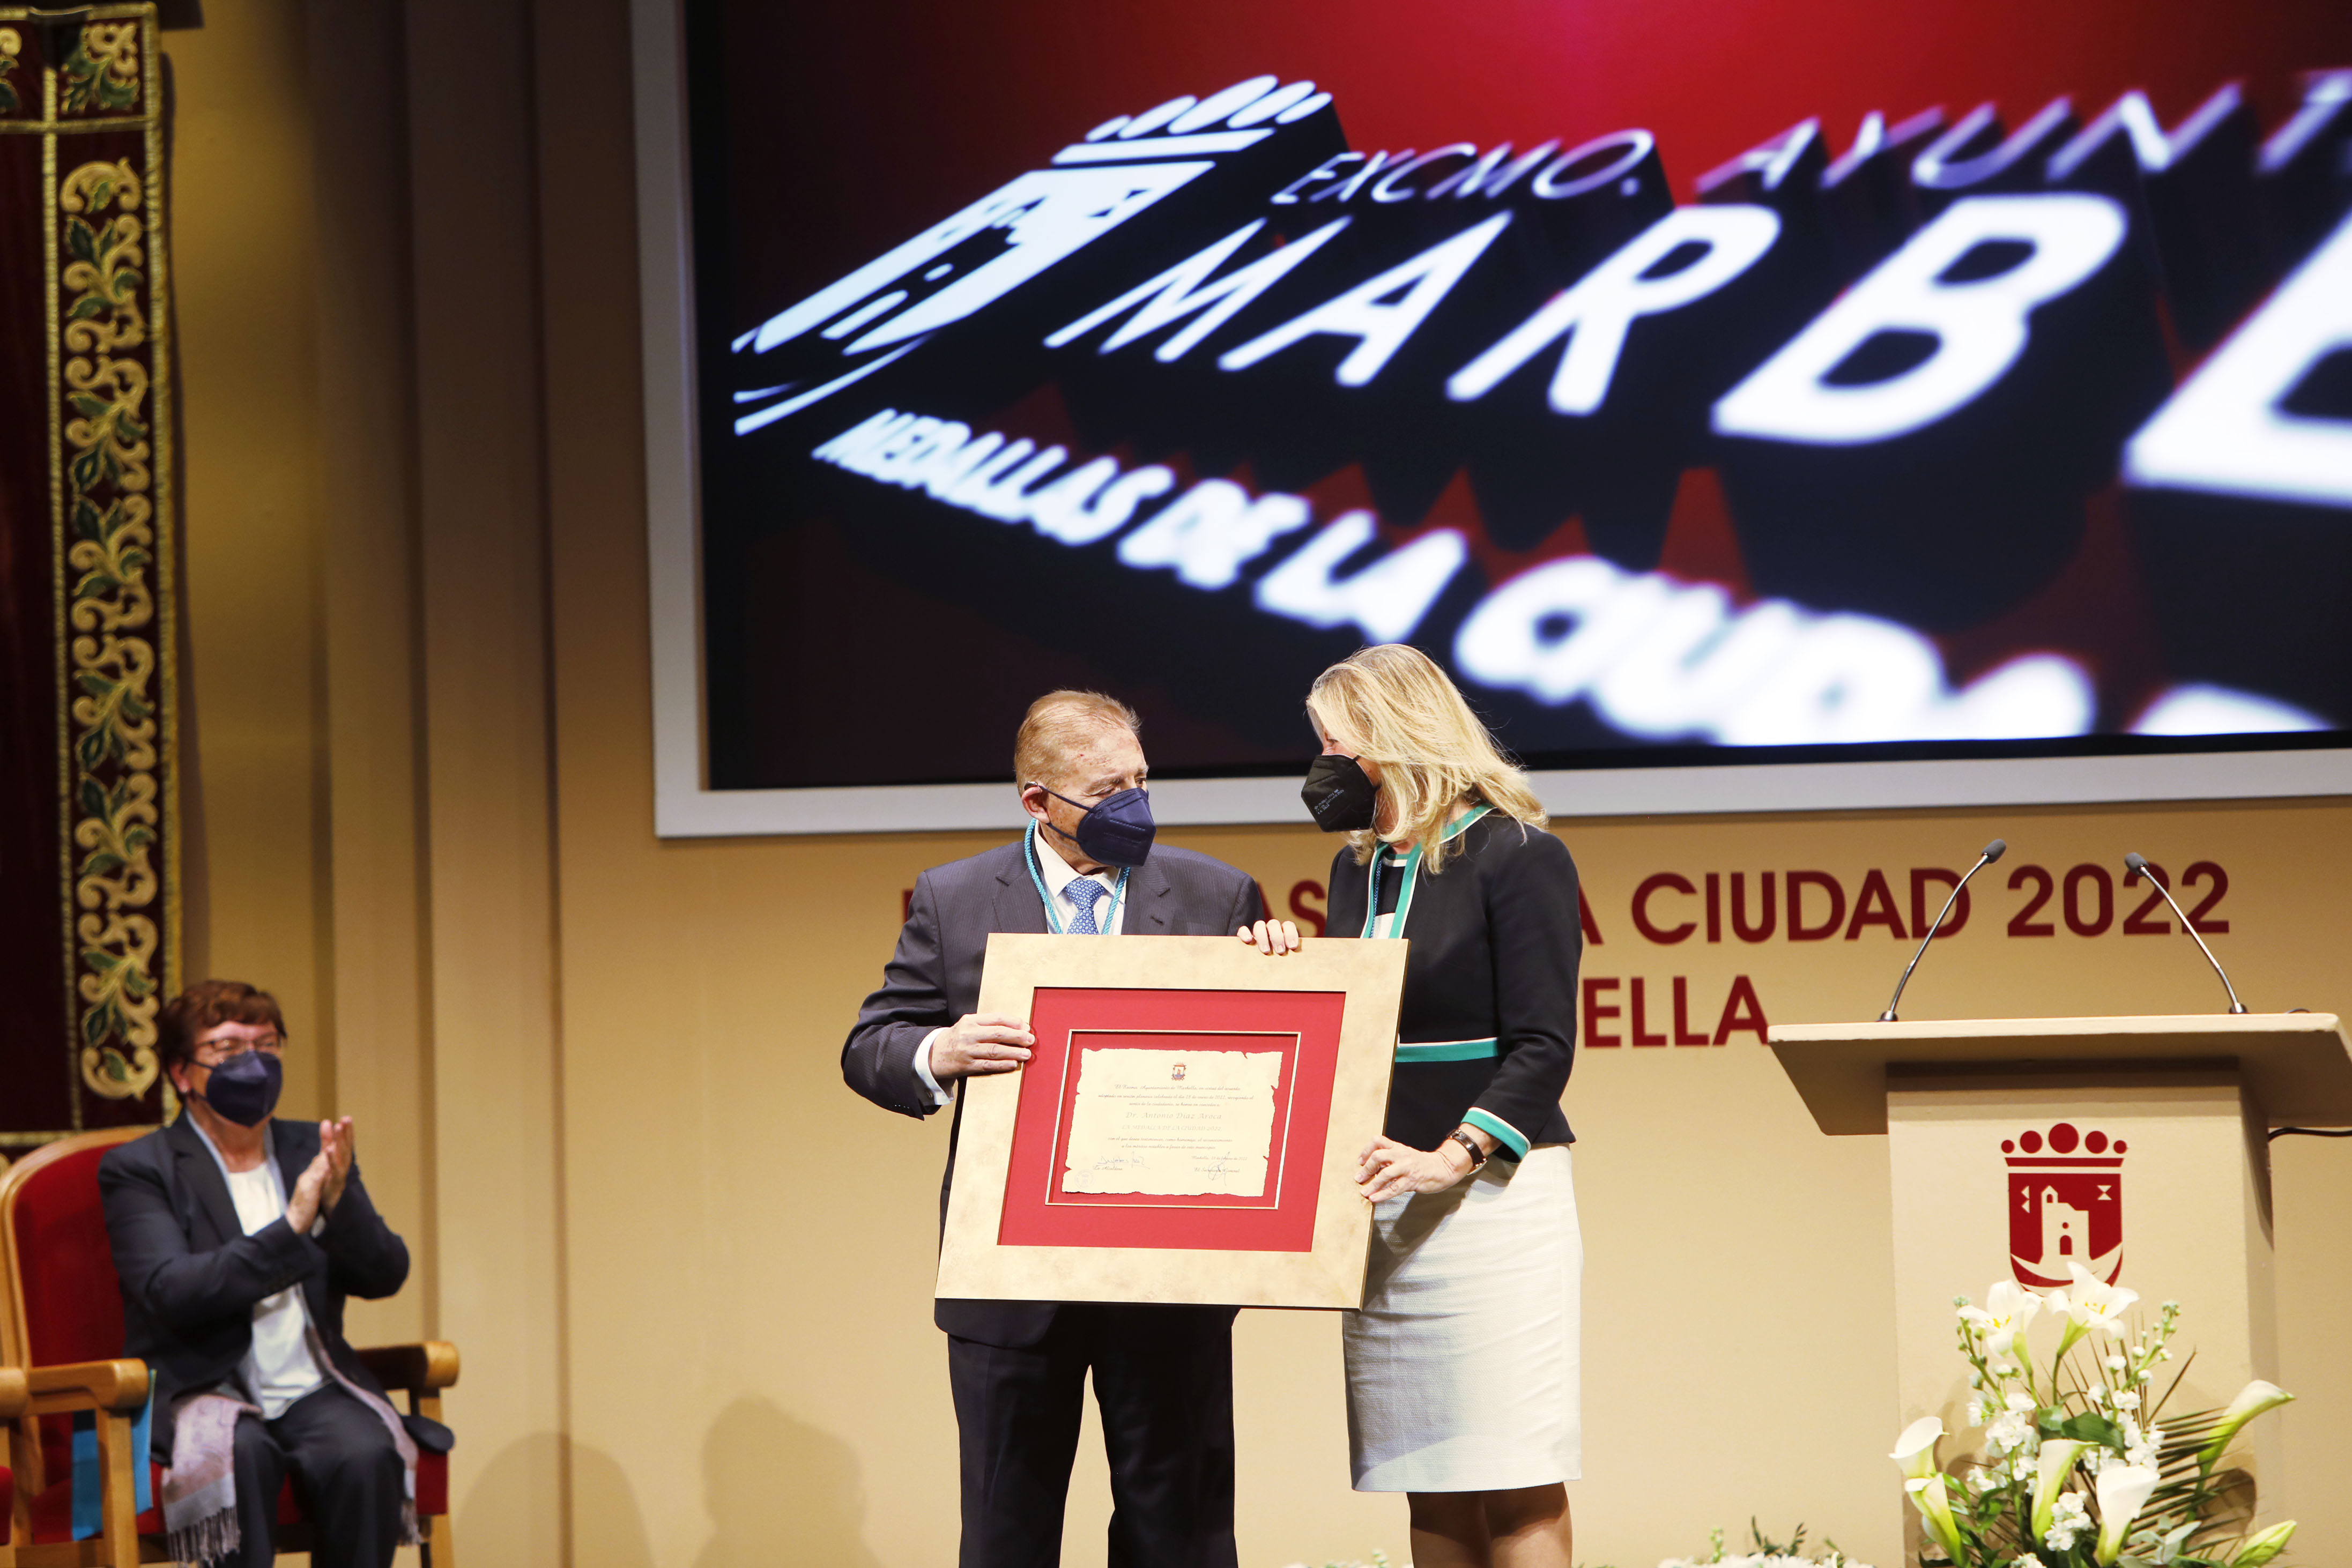 Marbella entrega las Medallas de la Ciudad a las instituciones Bancosol e Hijas de María Auxiliadora y al doctor Antonio Díaz Aroca por su humanidad y vocación de servicio público